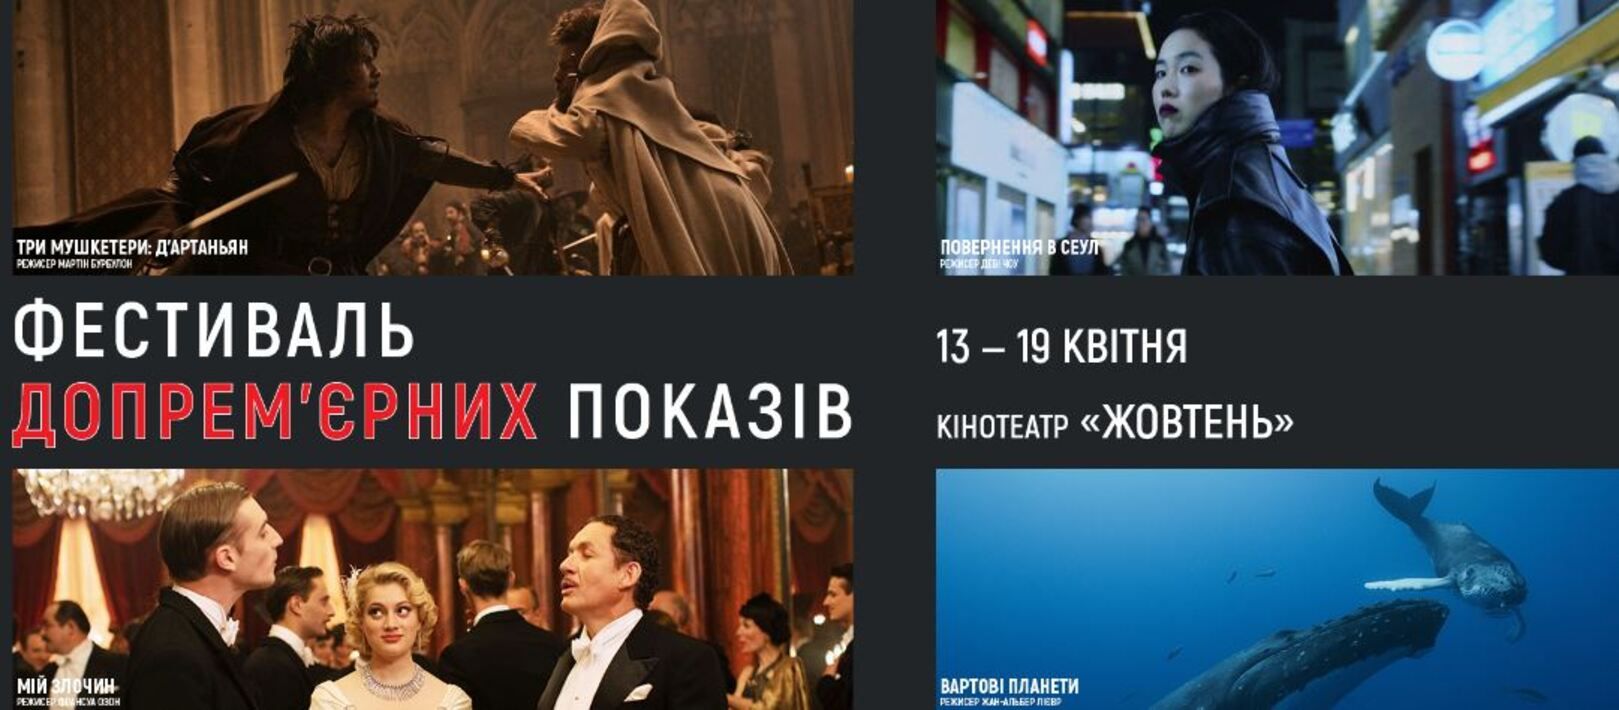 В Киеве начался Фестиваль допремьерных показов французского кино - Кино